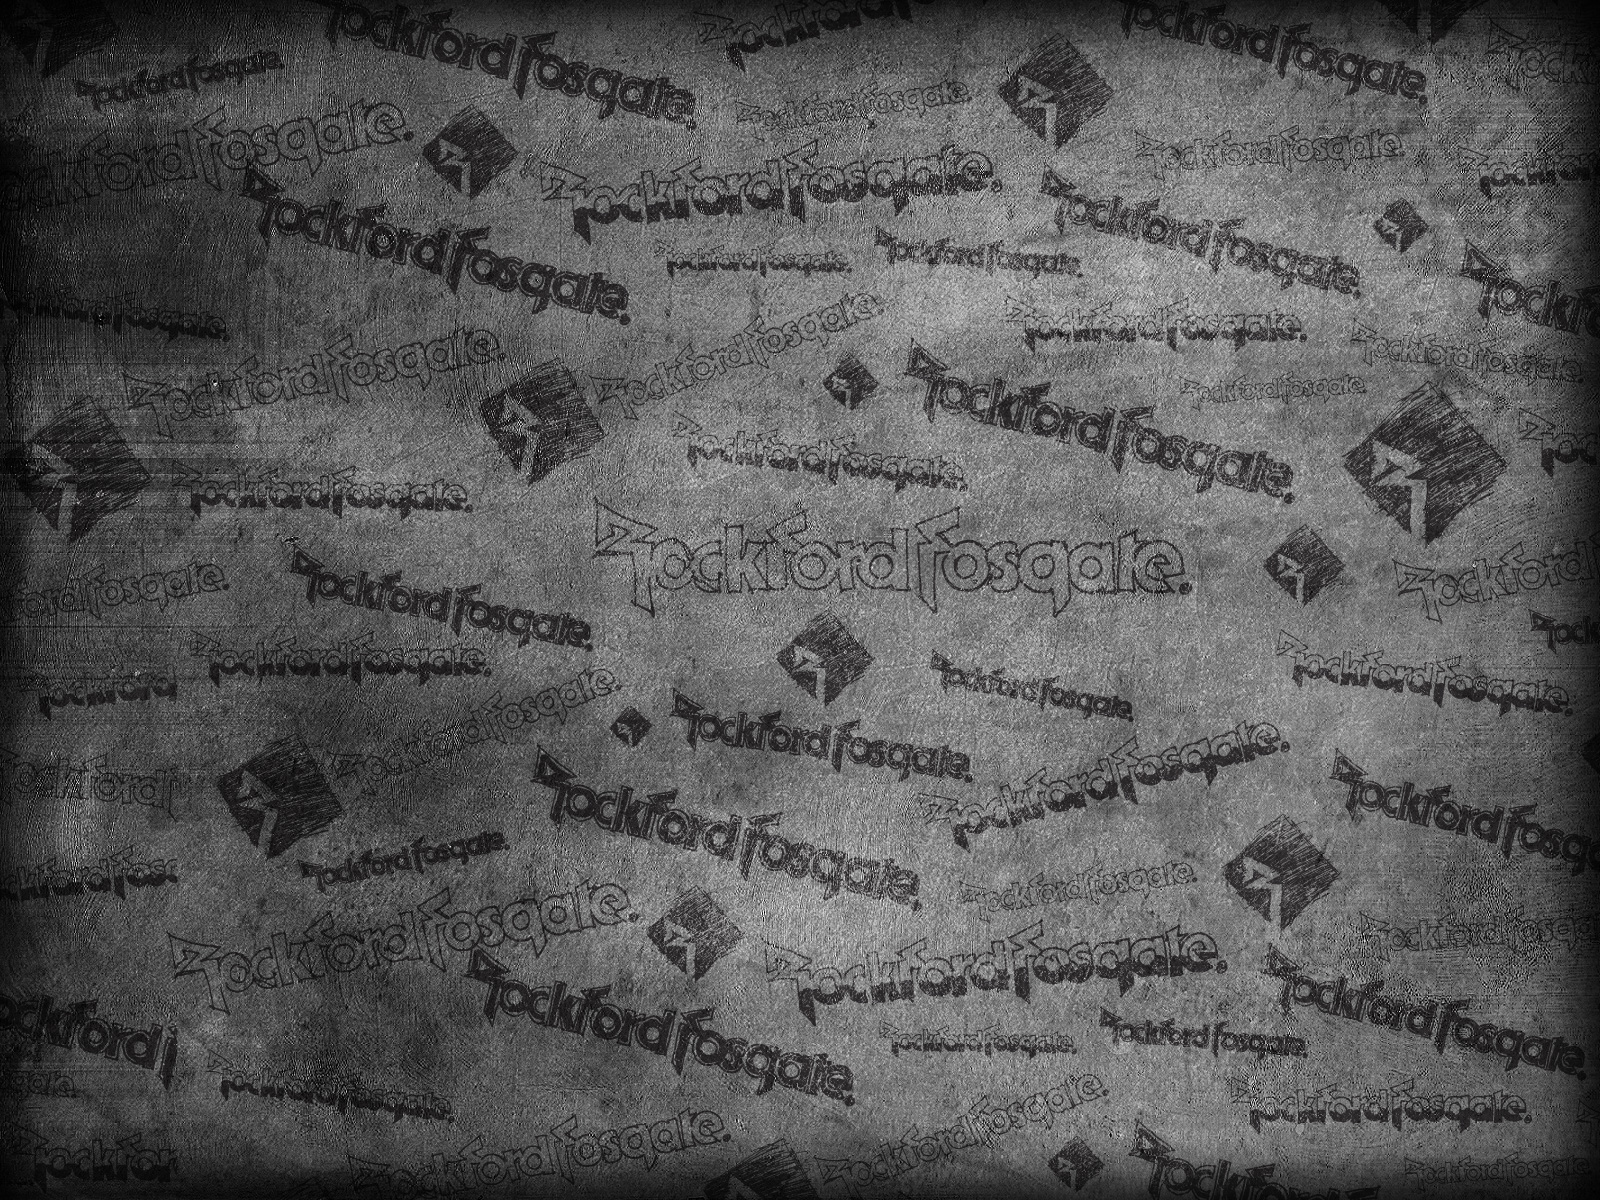 Rockford Fosgate Wallpaper